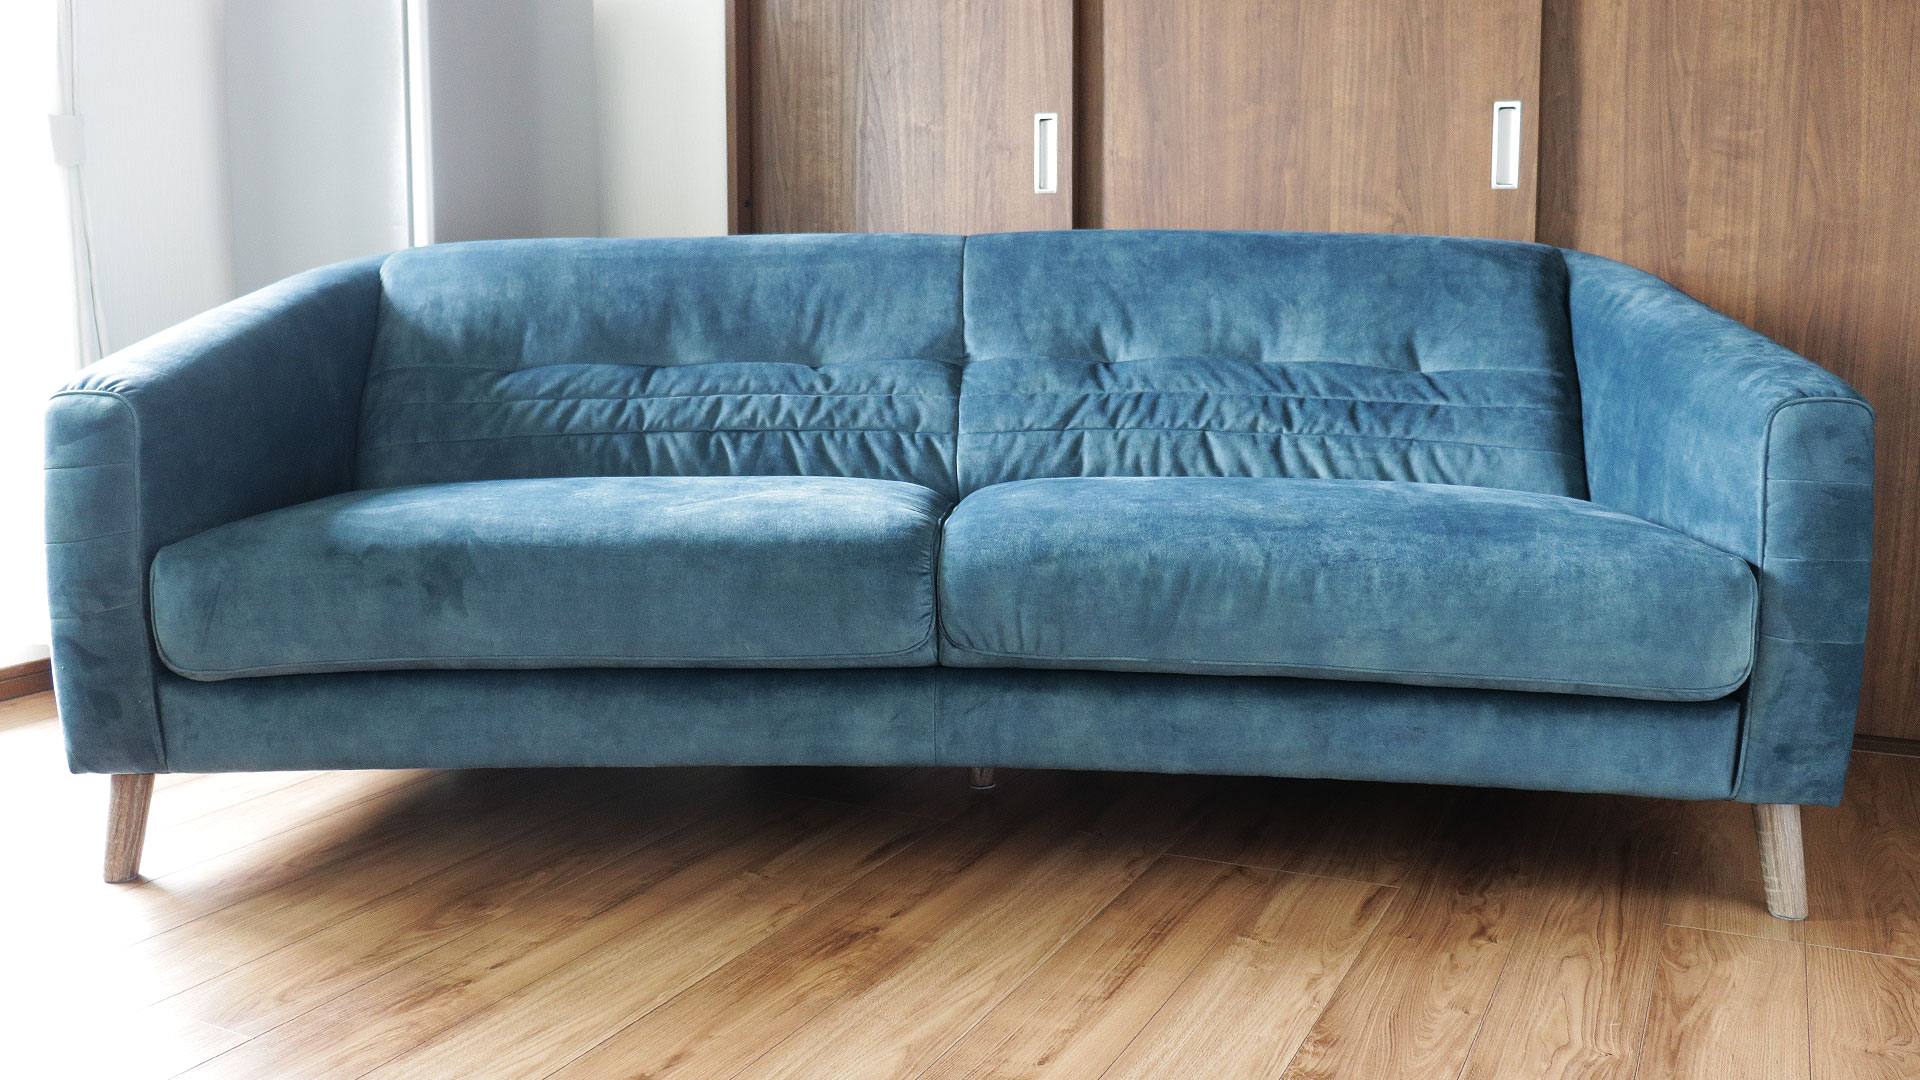 バイオリ―ノ社の欧米向けのオリジナルソファ。ベルベッド生地を使用した高級ソファ。フラヴィオの正面からの全体画像